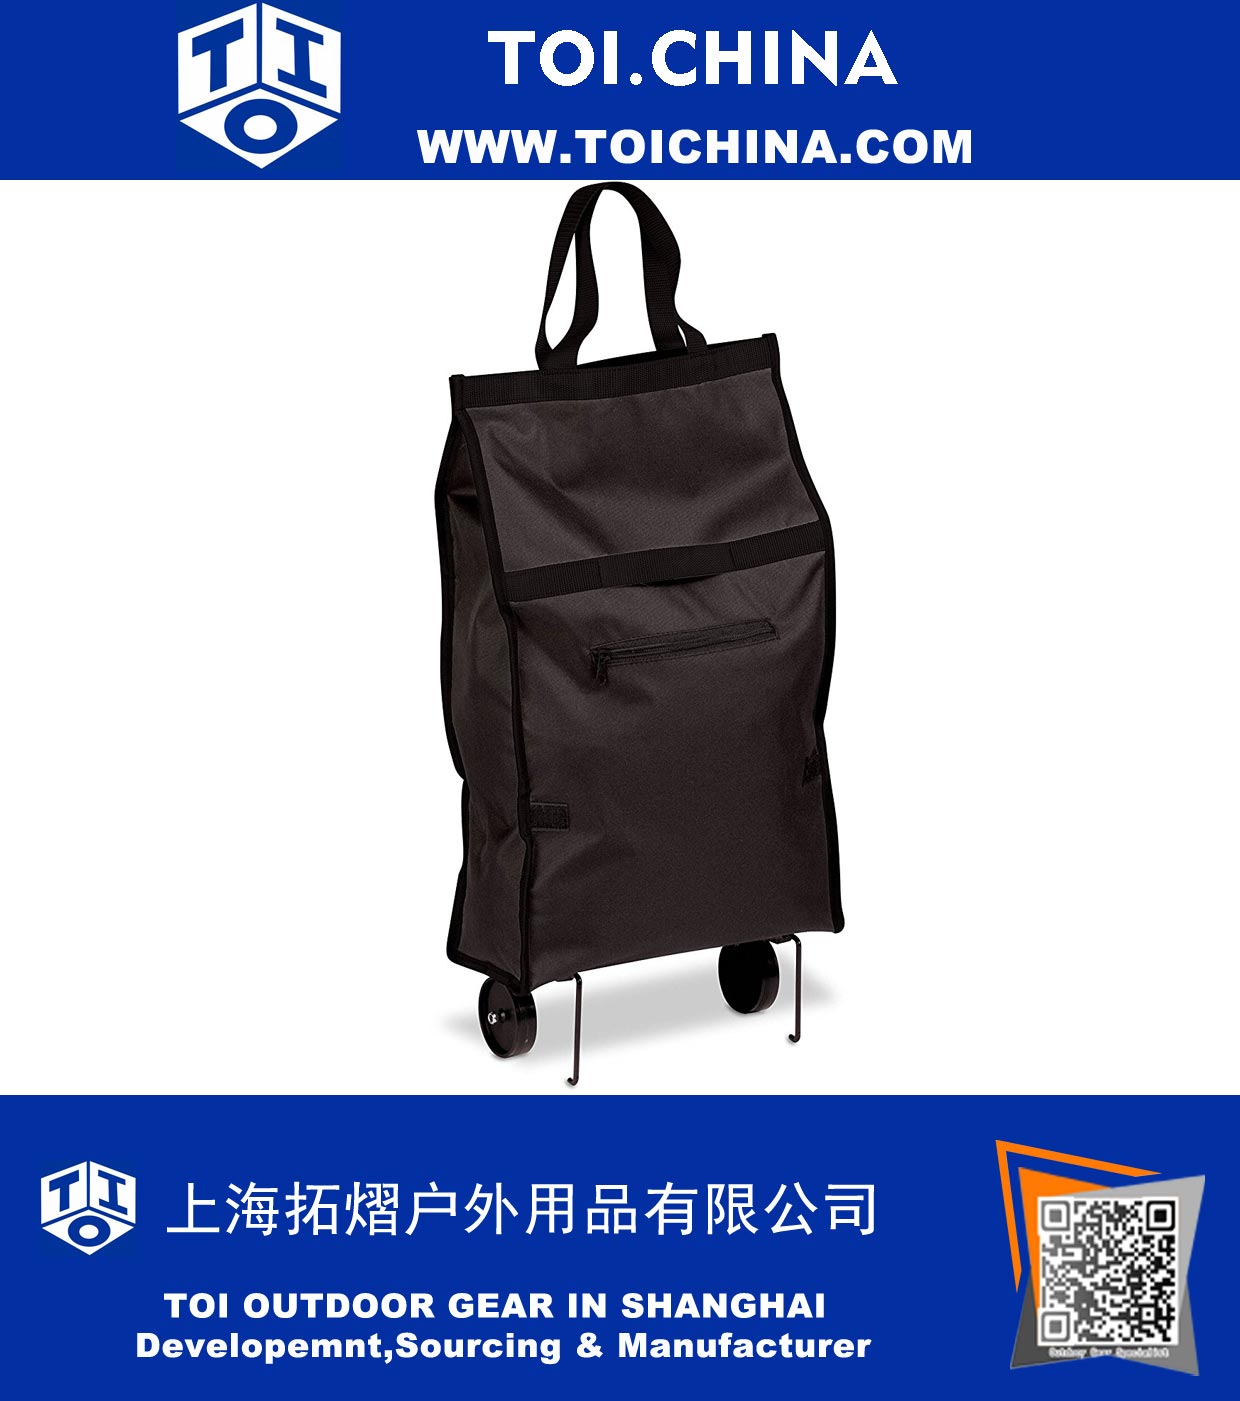 Carrinho de tecido com sacola, com capacidade para até 40 libras, preto, 12,5 x 5,6 x 24,75